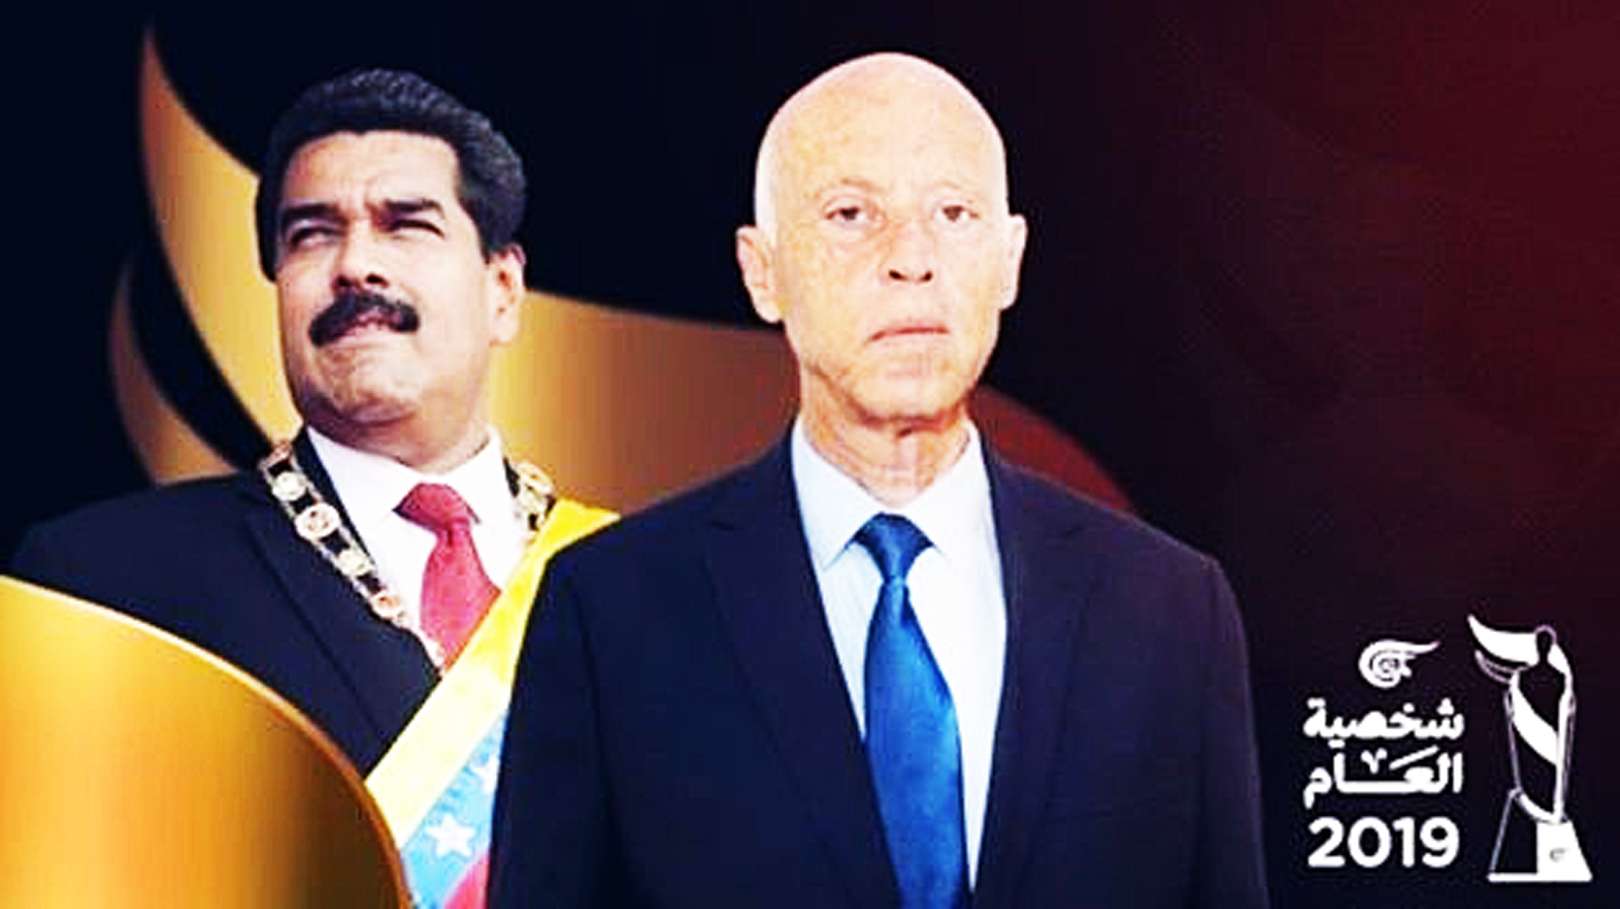 Al Mayadeen galardona Pdte Maduro Kais Saied como Personalidad del Año 2019